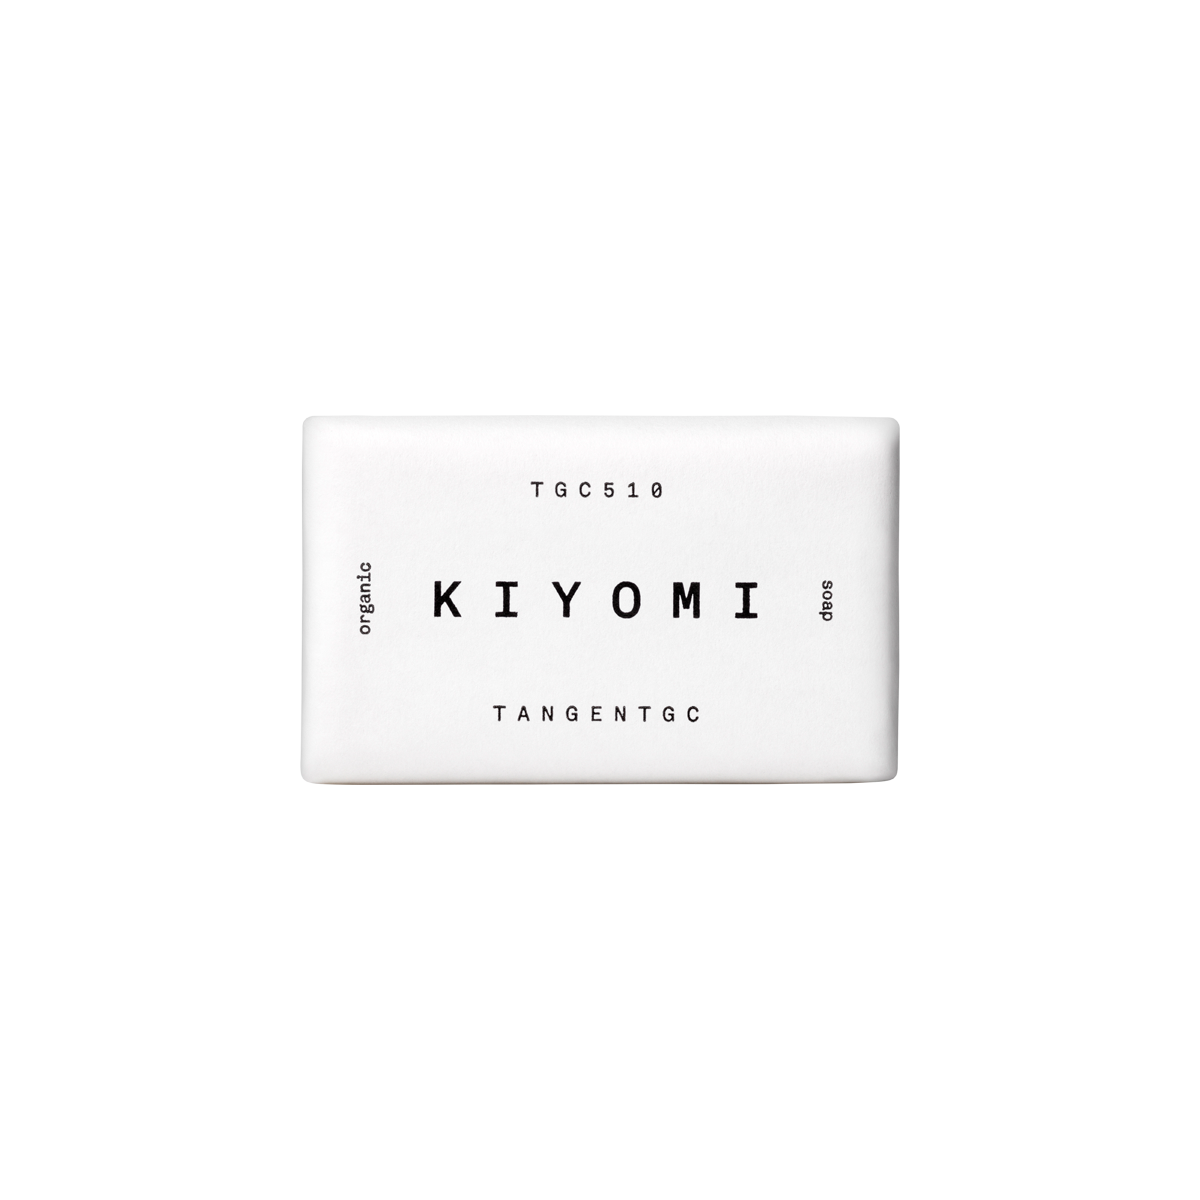 Tangent GC - Kiyomi Soap Bar